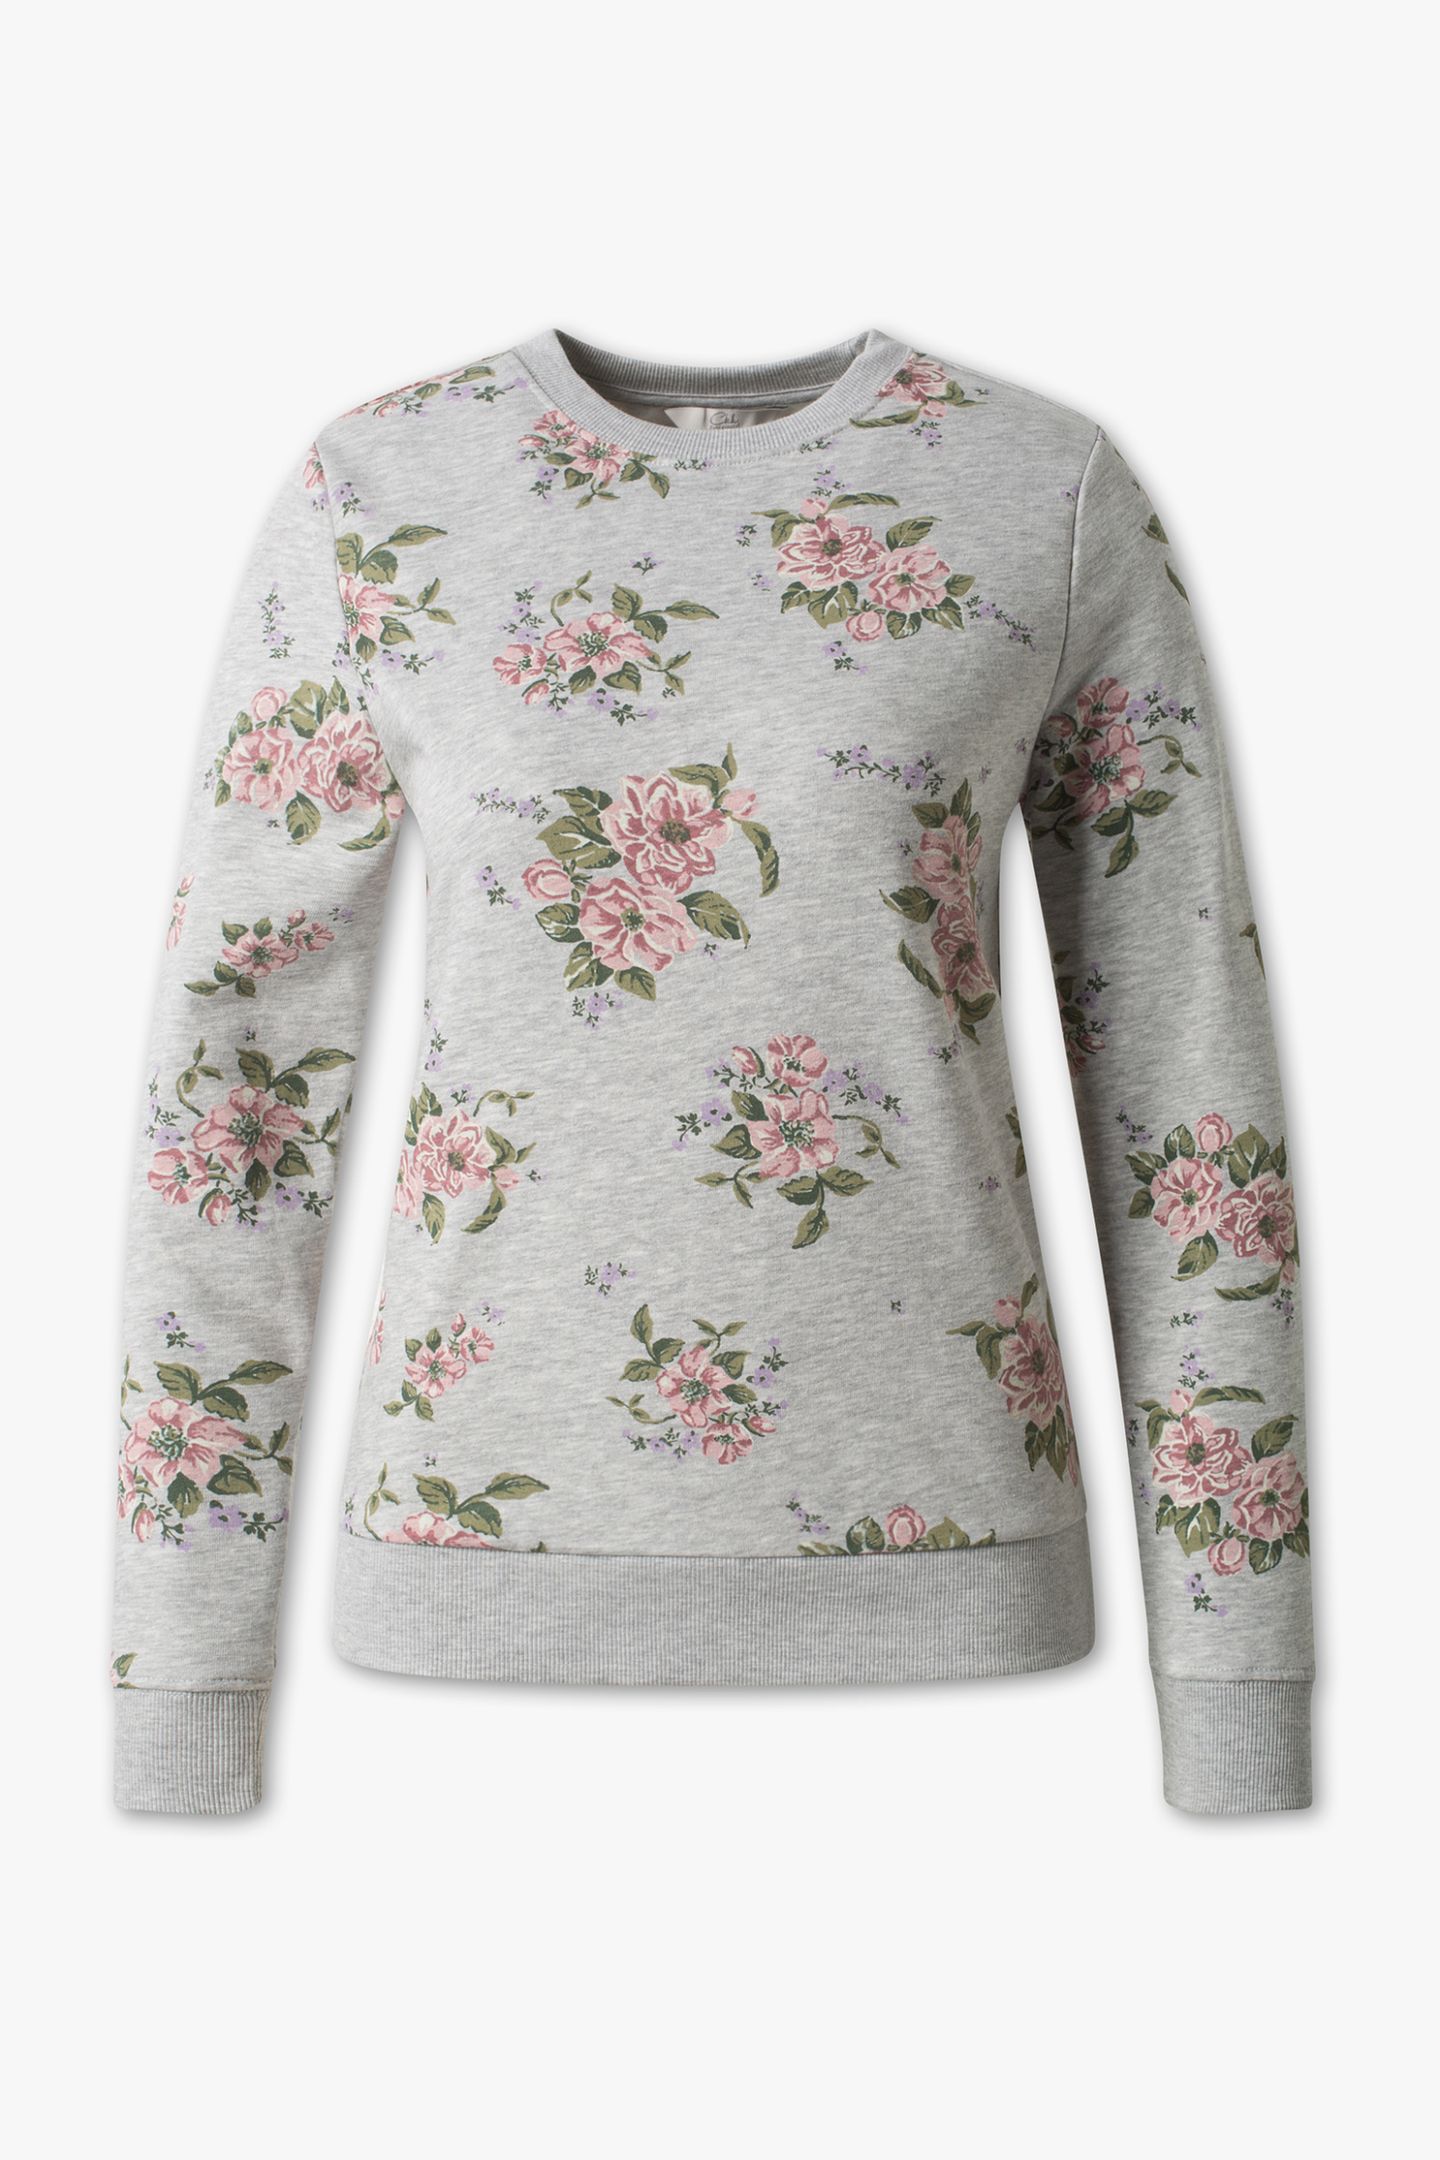 Neu in den Shops im Januar: Grauer Pullover mit Blumen-Print